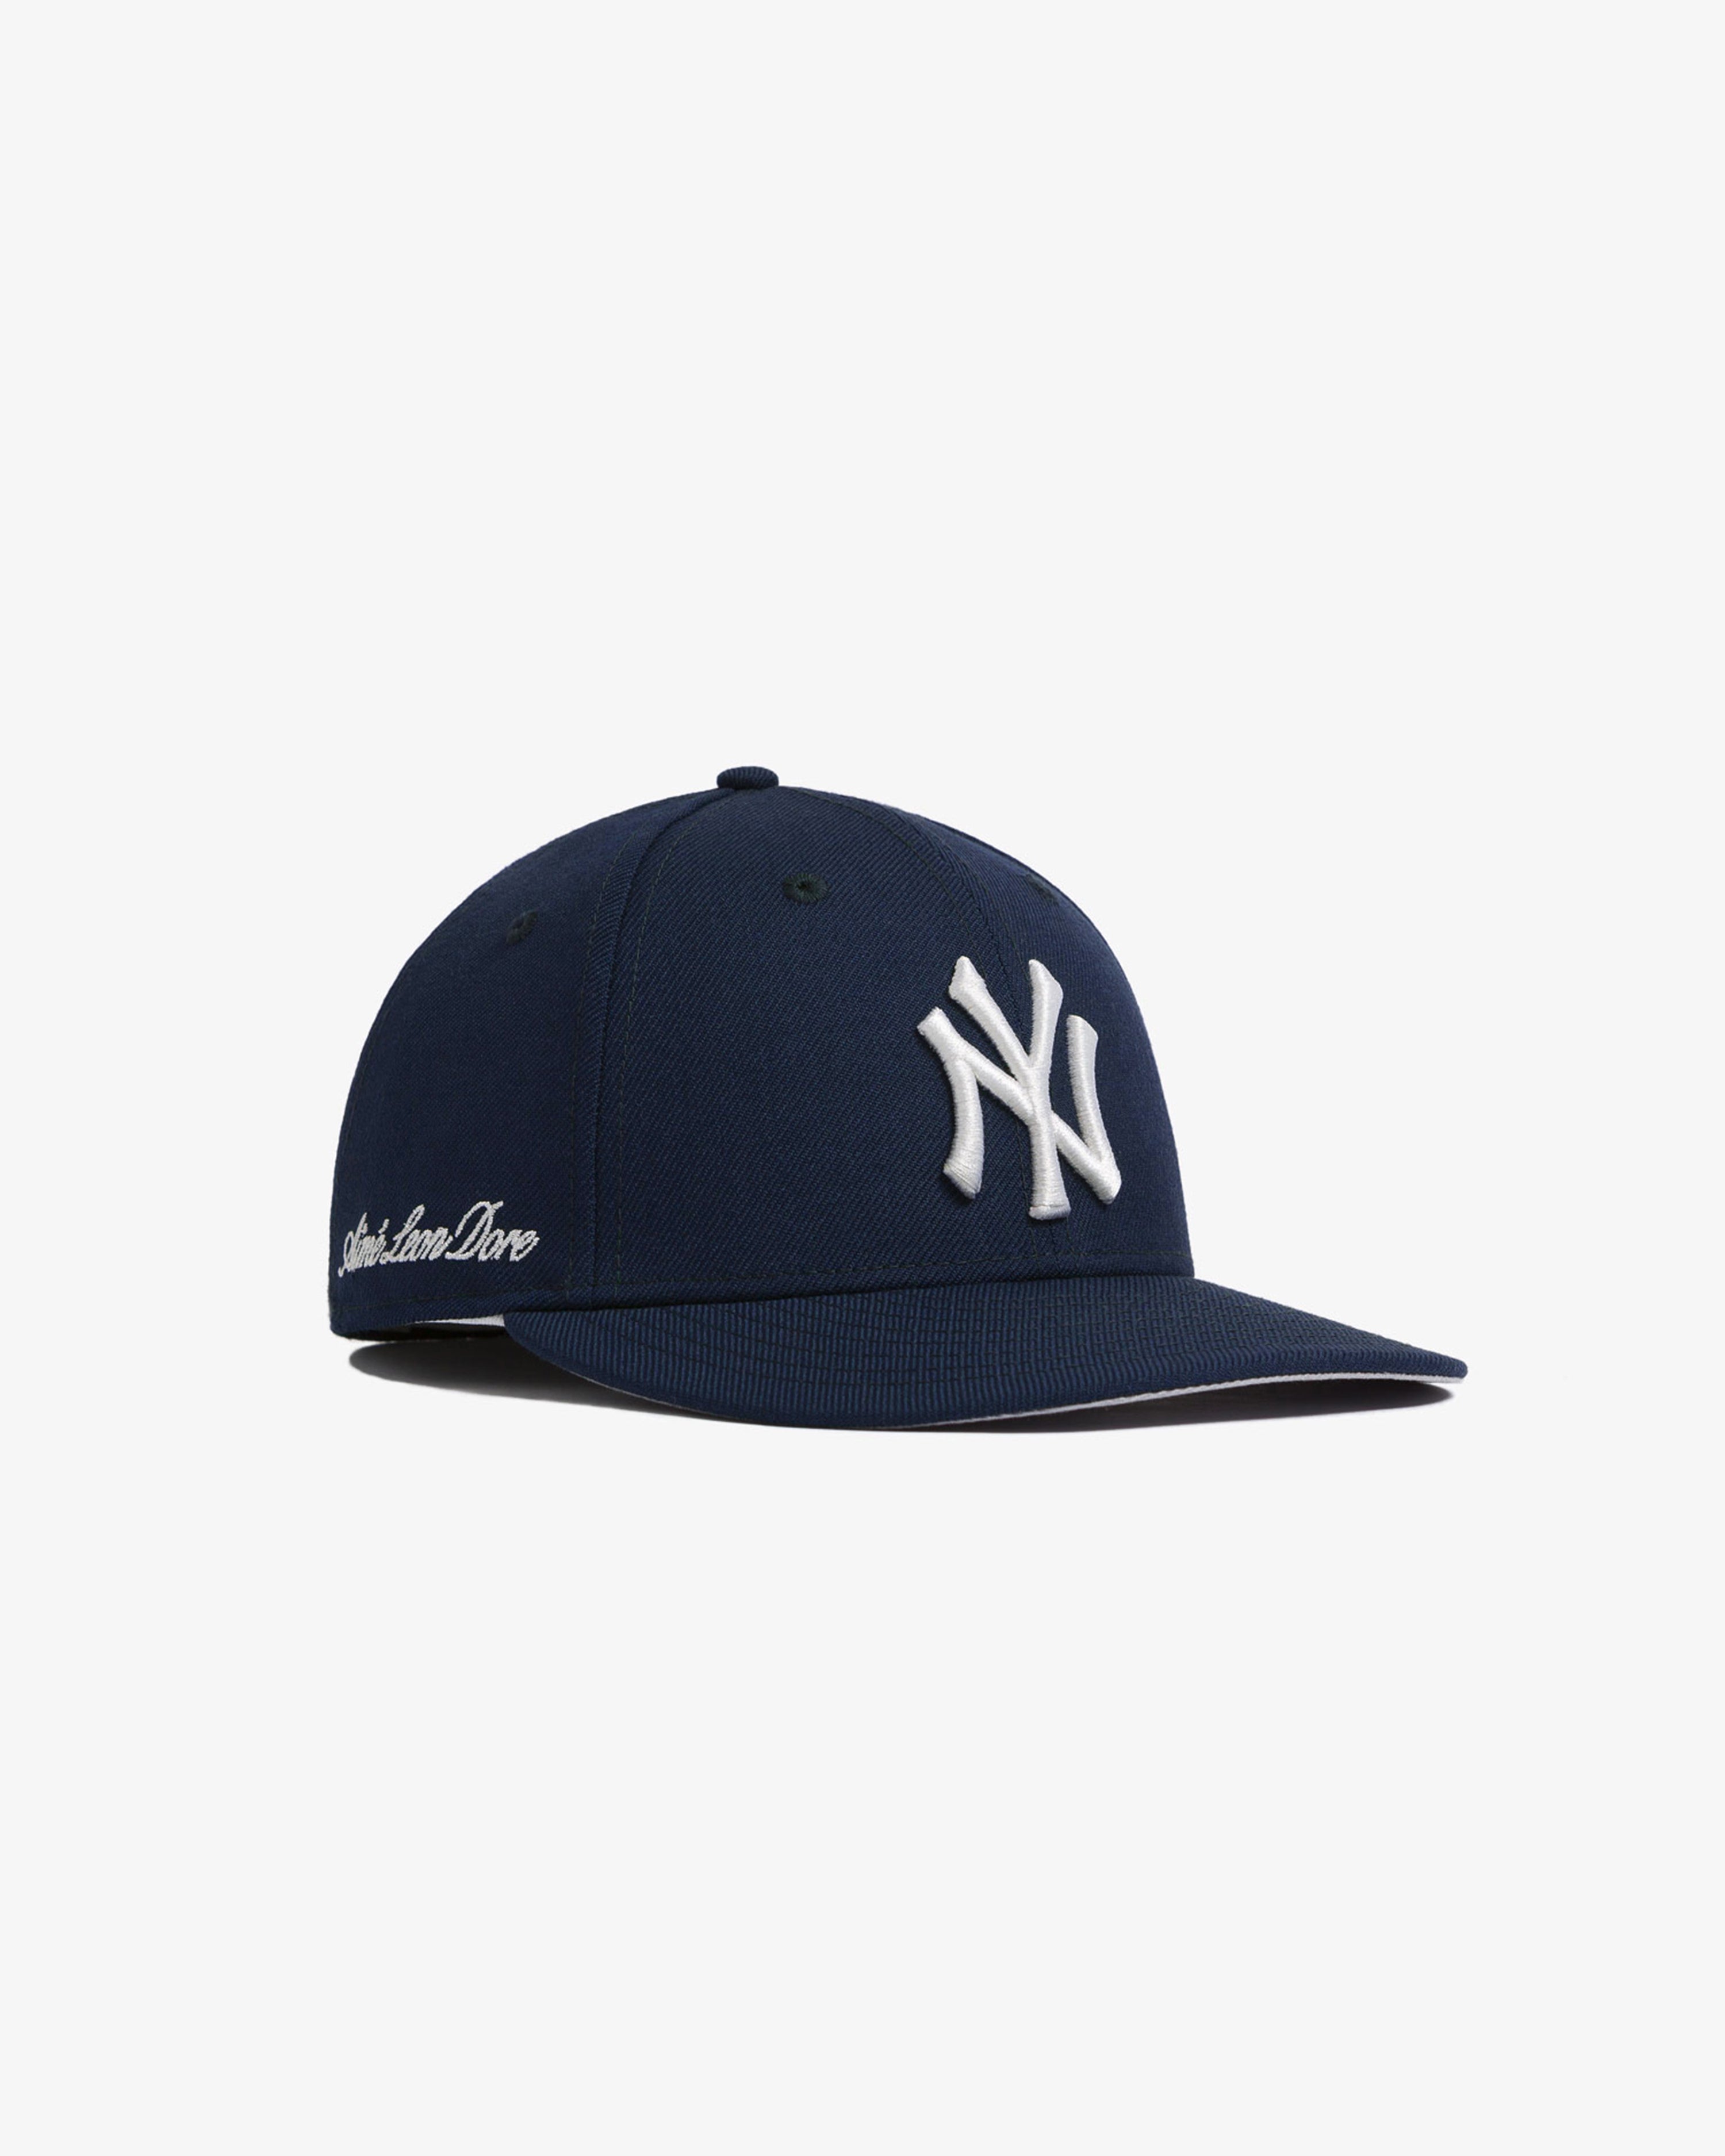 Aime Leon Dore x New Era Yankees Hat Navy